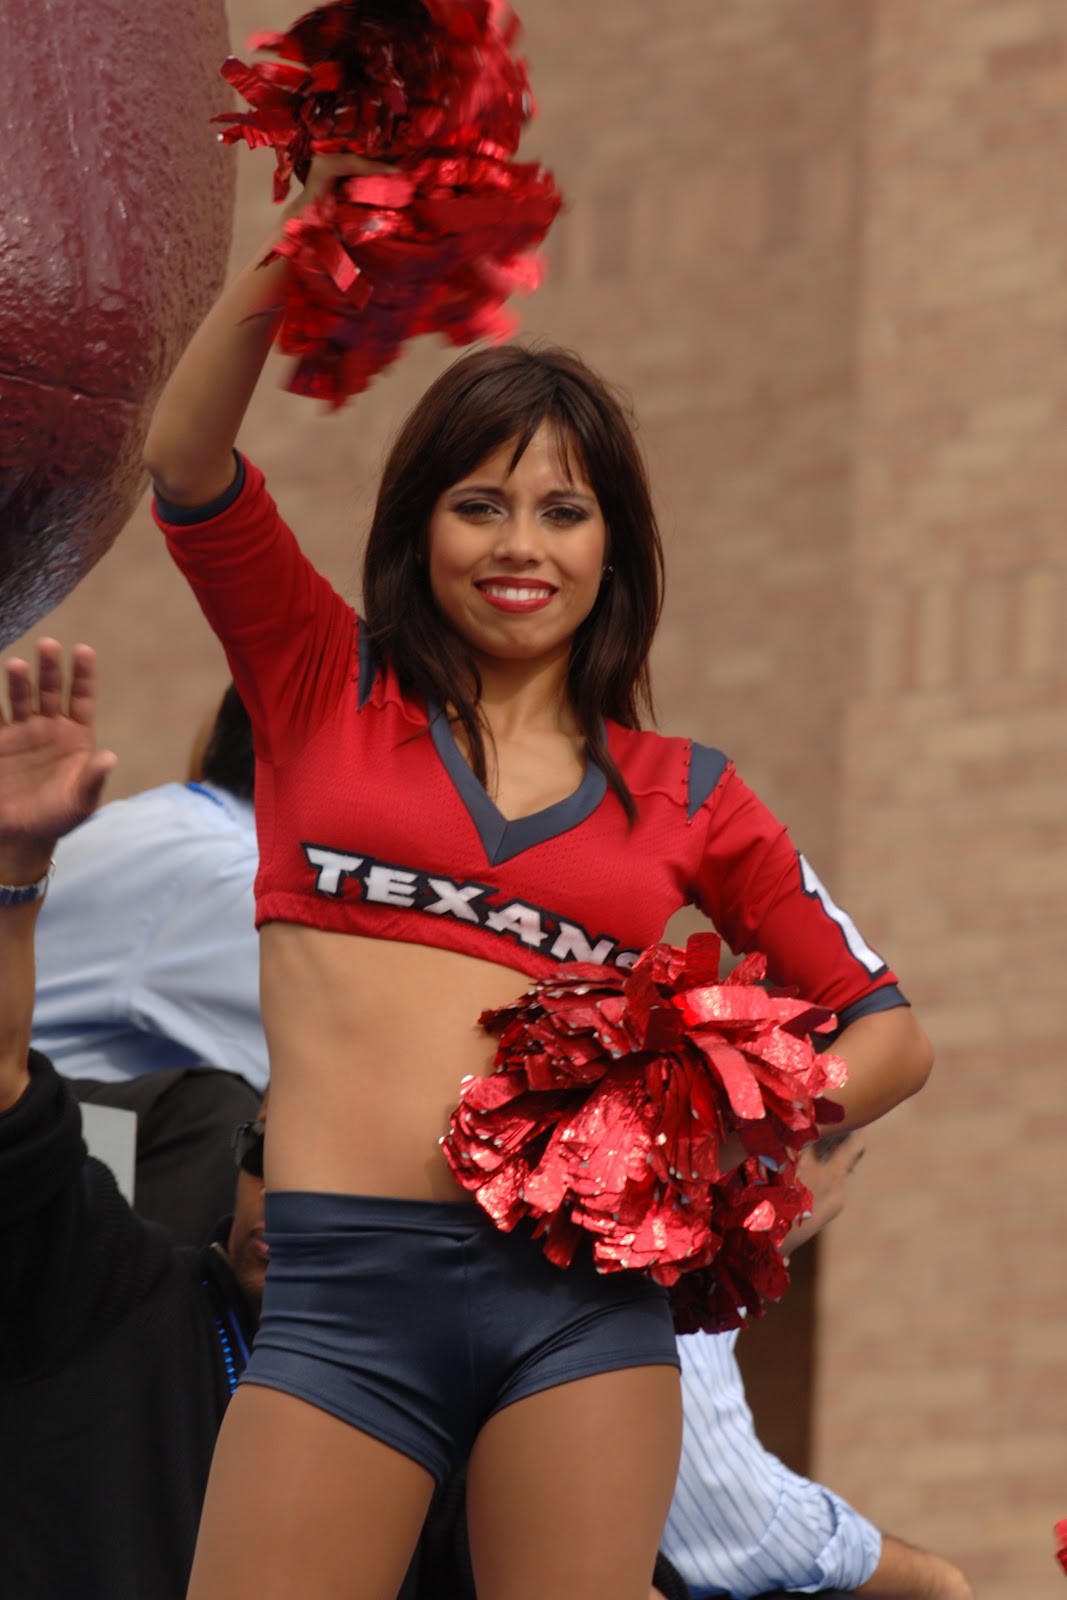 Hot Houston Texans Cheerleaders Pictures